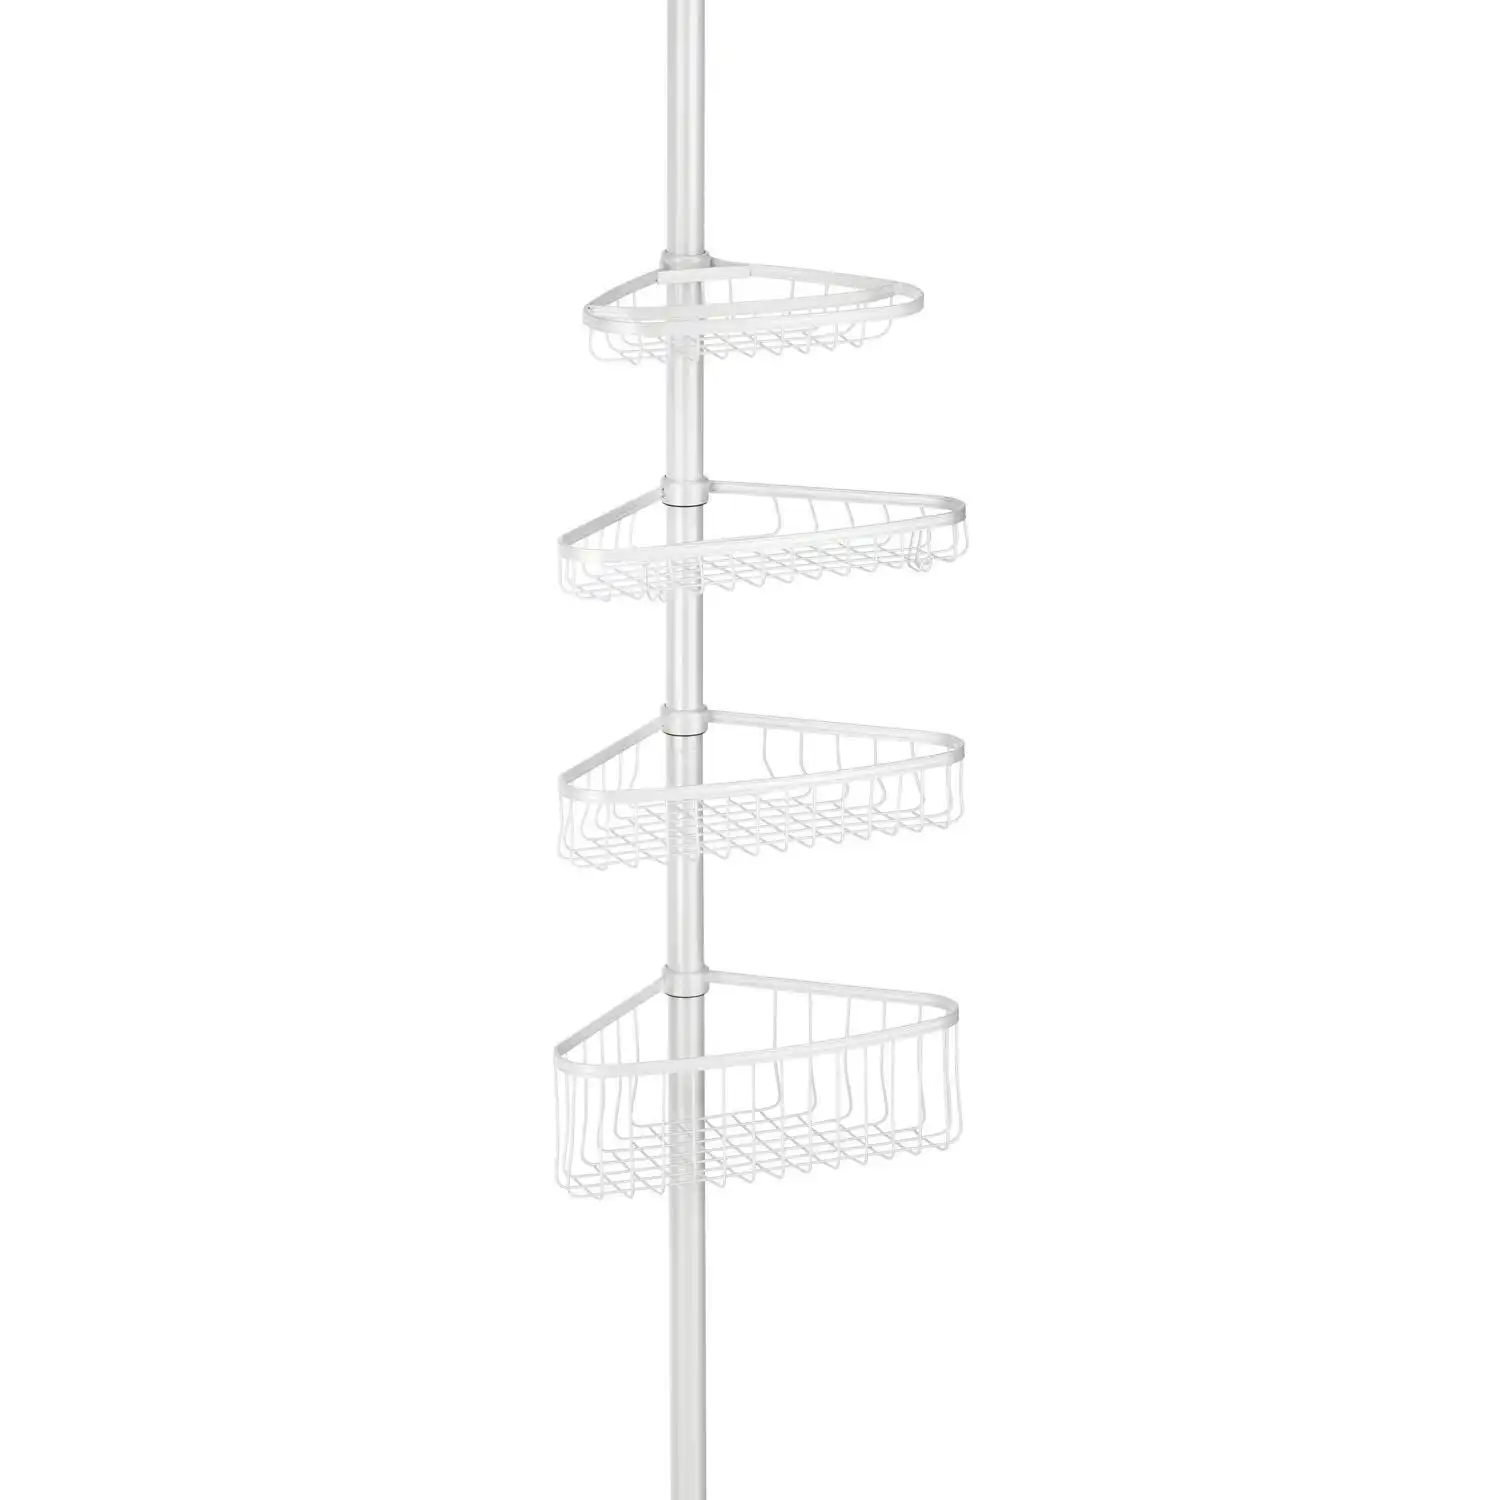 Idesign York Tension Adjustable Corner Shower Bathroom Wire Caddy White 59.6cm